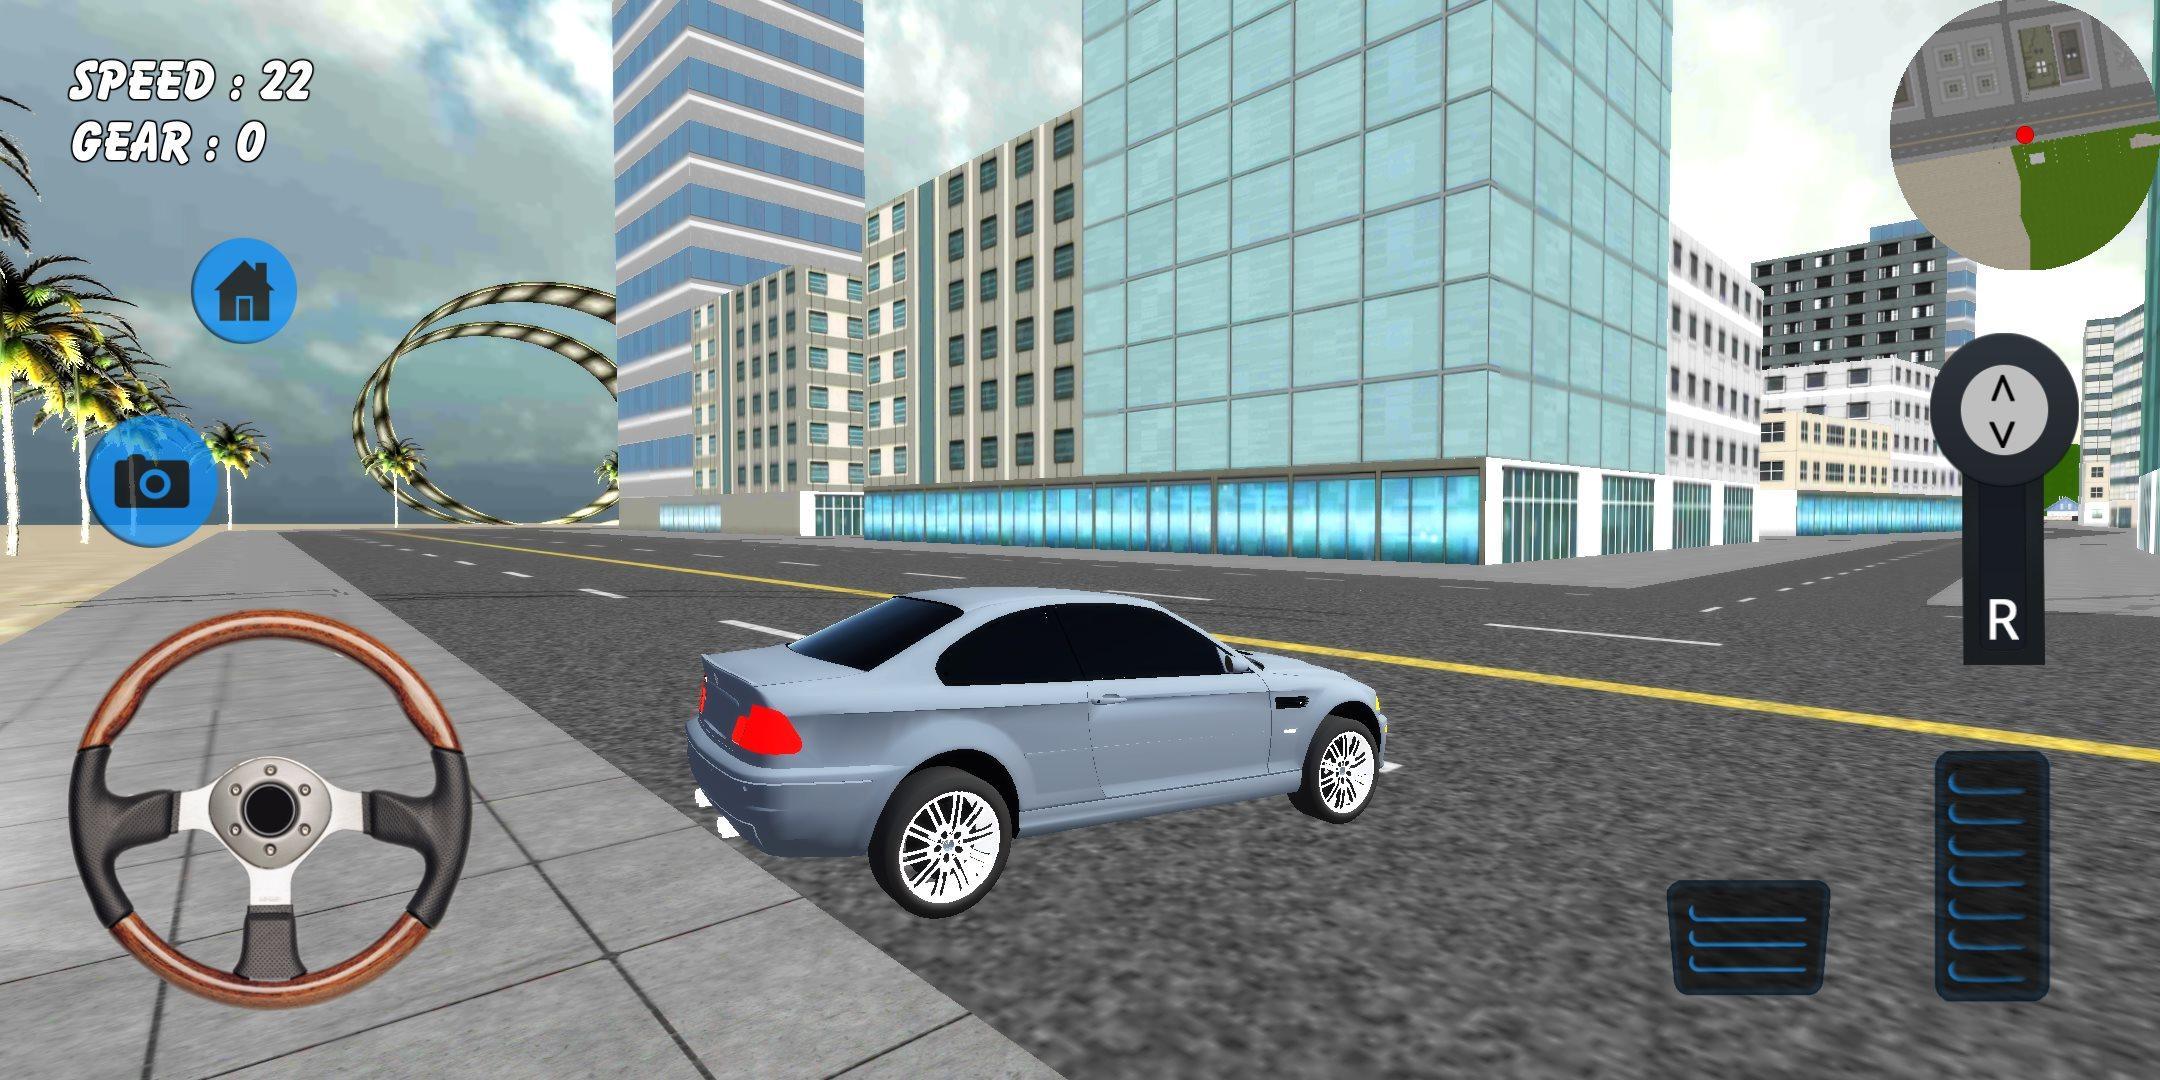 Симулятор установить на телефон. Карта игры симулятор вождения 2. ПДД вождение симулятор синяя машина. Симулятор опасного вождения автомобиля с прицепом. Симулятор автошколы между конусов.